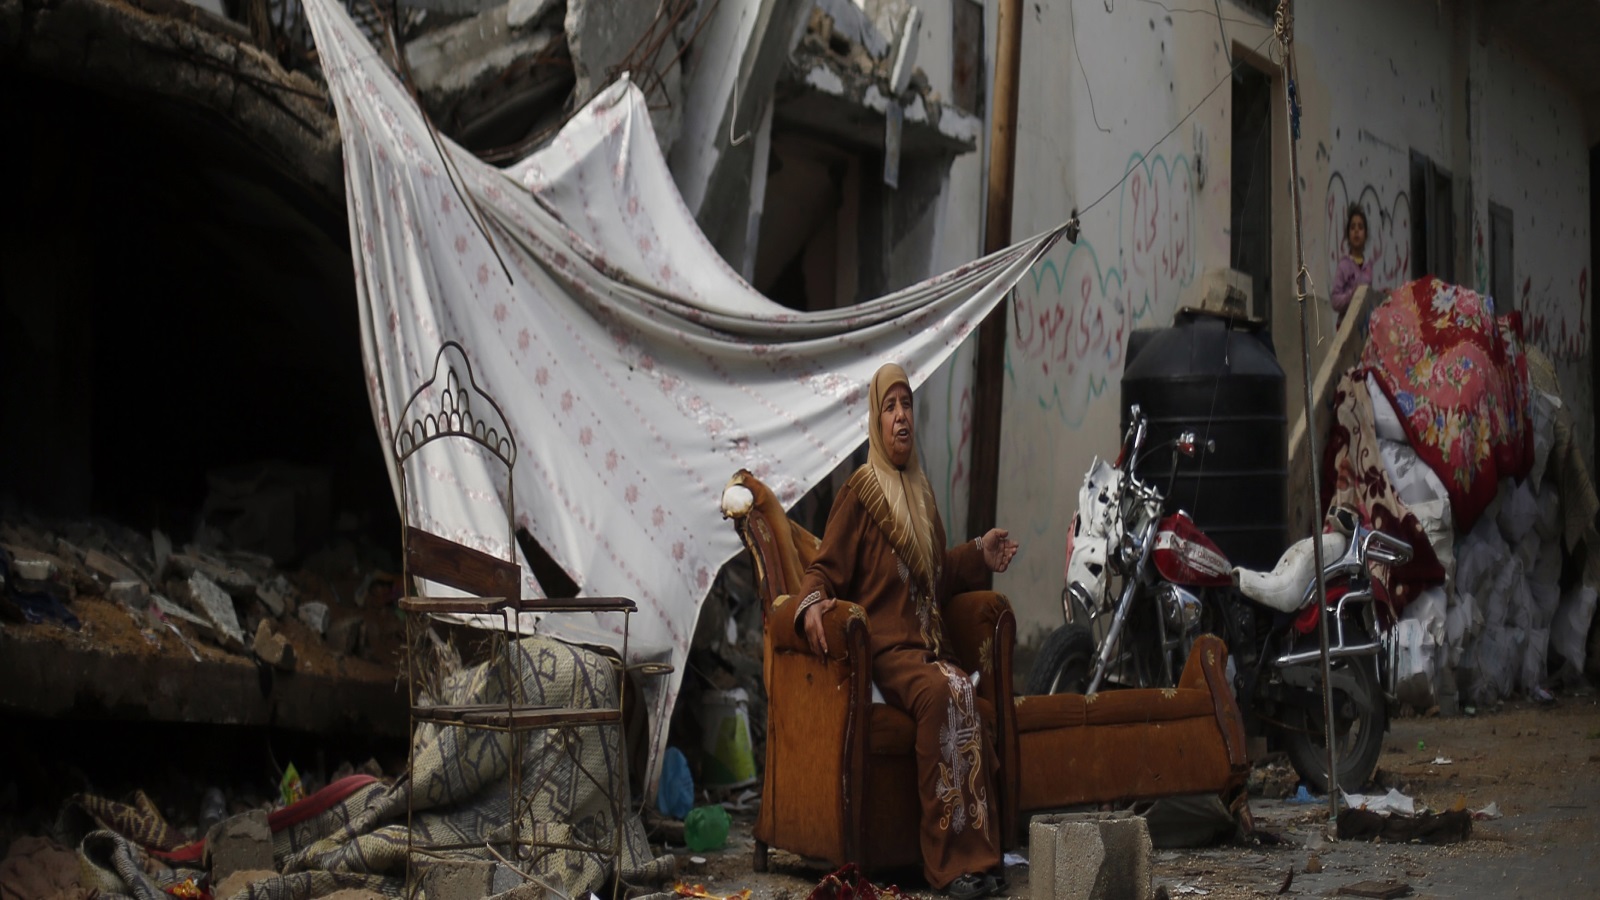 تحتاج غزة لحملة كبيرة من قبل الفصائل الوطنية والشعب داخل وخارج فلسطين للضغط على الحكومات والمؤسسات الدولية من أجل رفع الحصار، إضافة لتسليط الضوء إعلاميا على أبسط تفاصيل الحياة